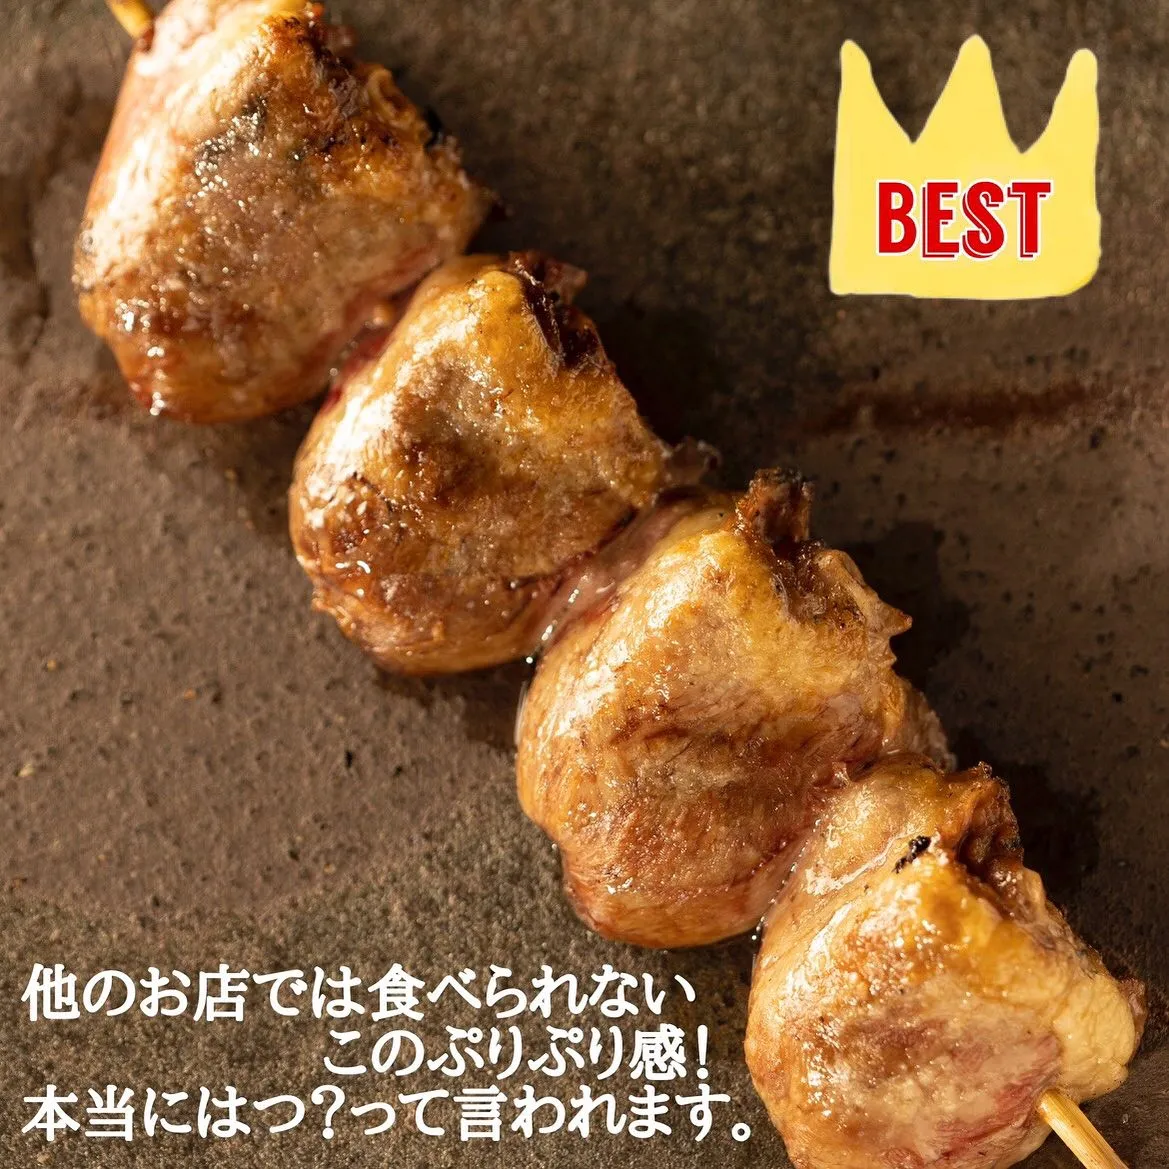 中央線・武蔵境駅周辺で美味しい焼鳥、もつ鍋、おでんを食べるな...